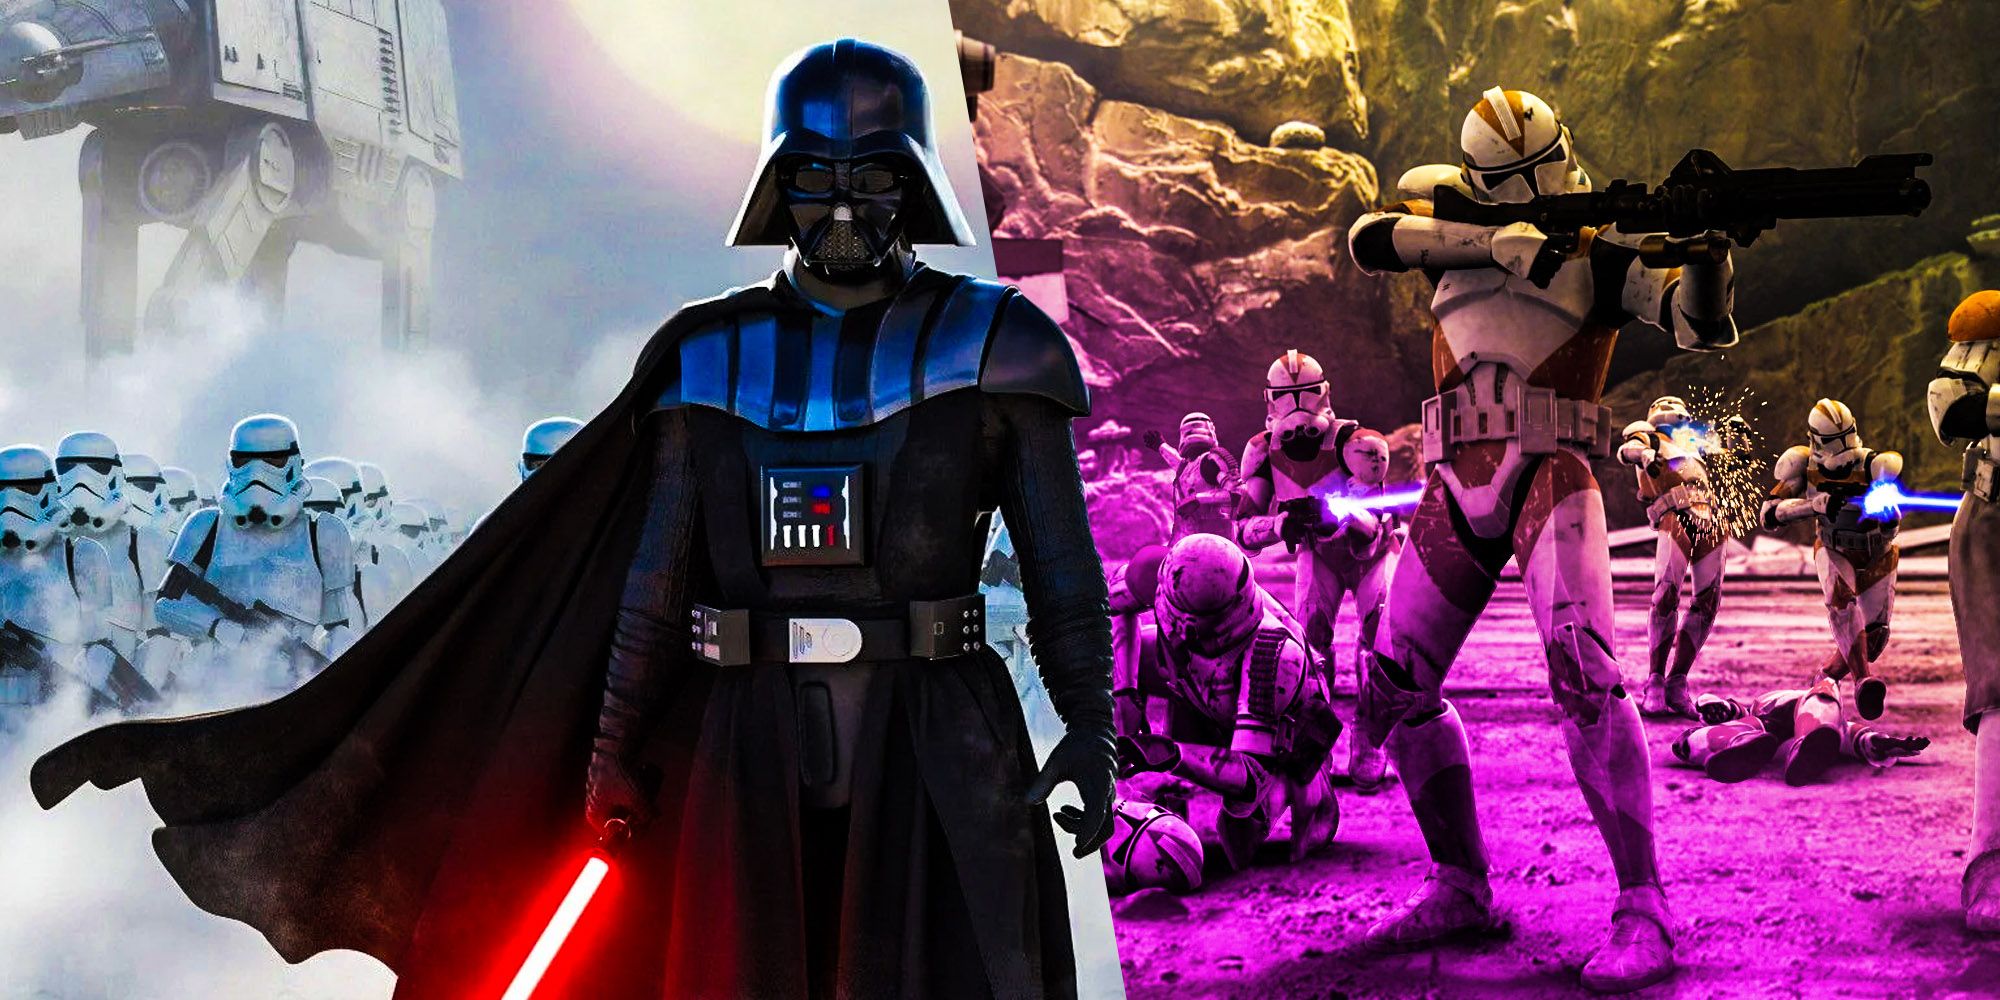 Darth Vader Star Wars Empire abandoned clones